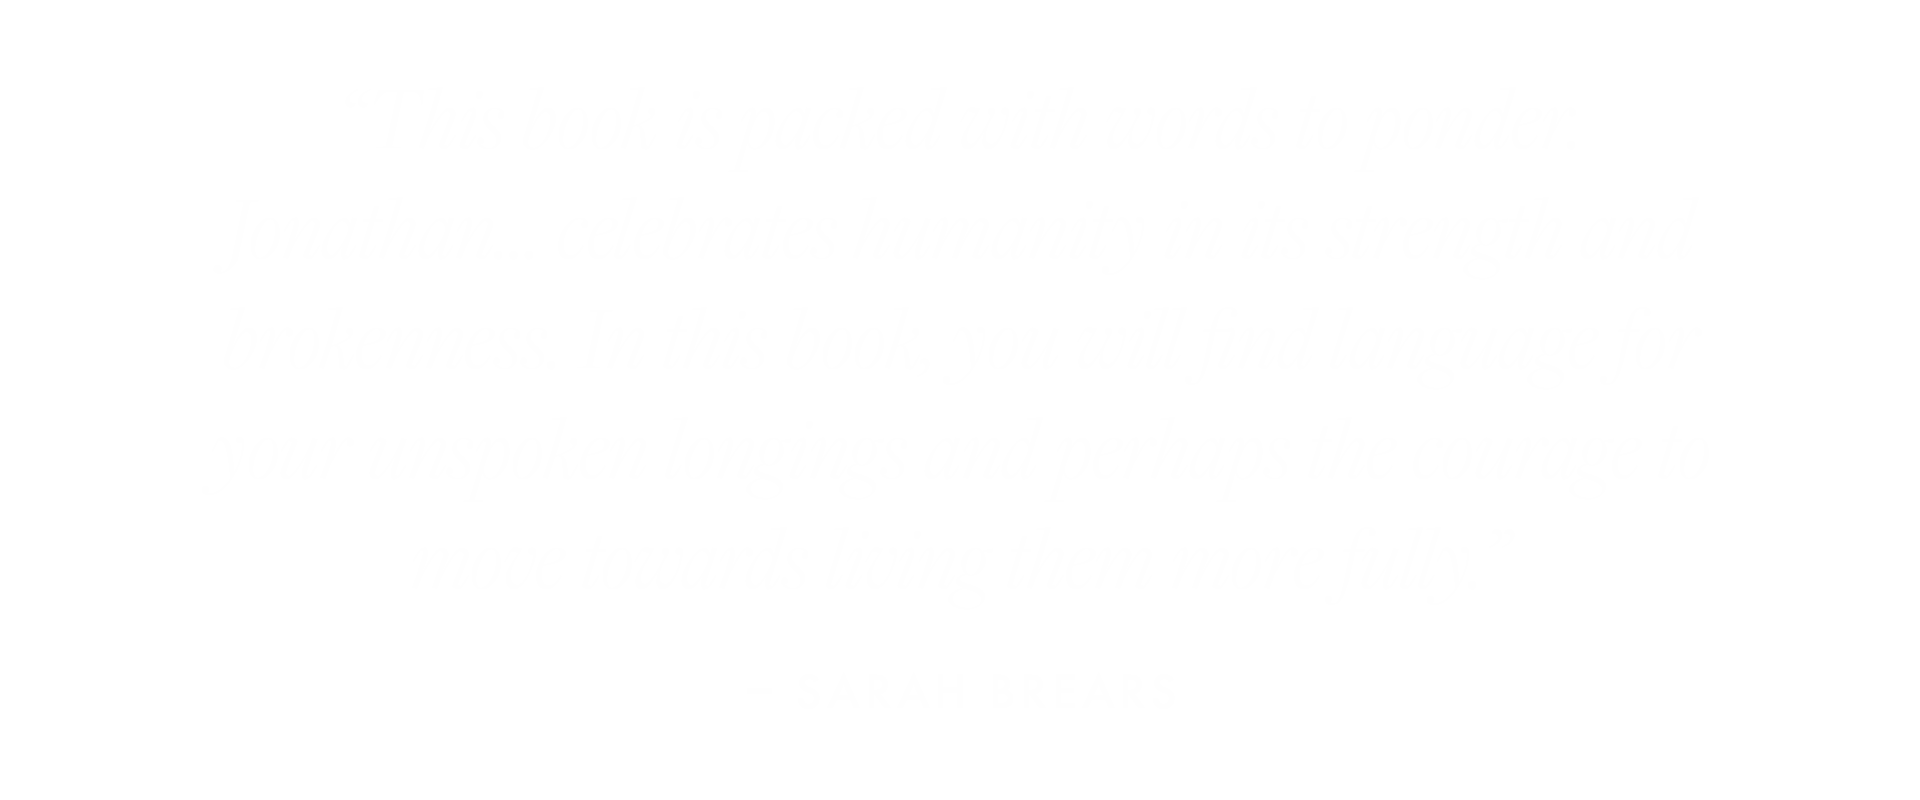 Sarah-Brears.png